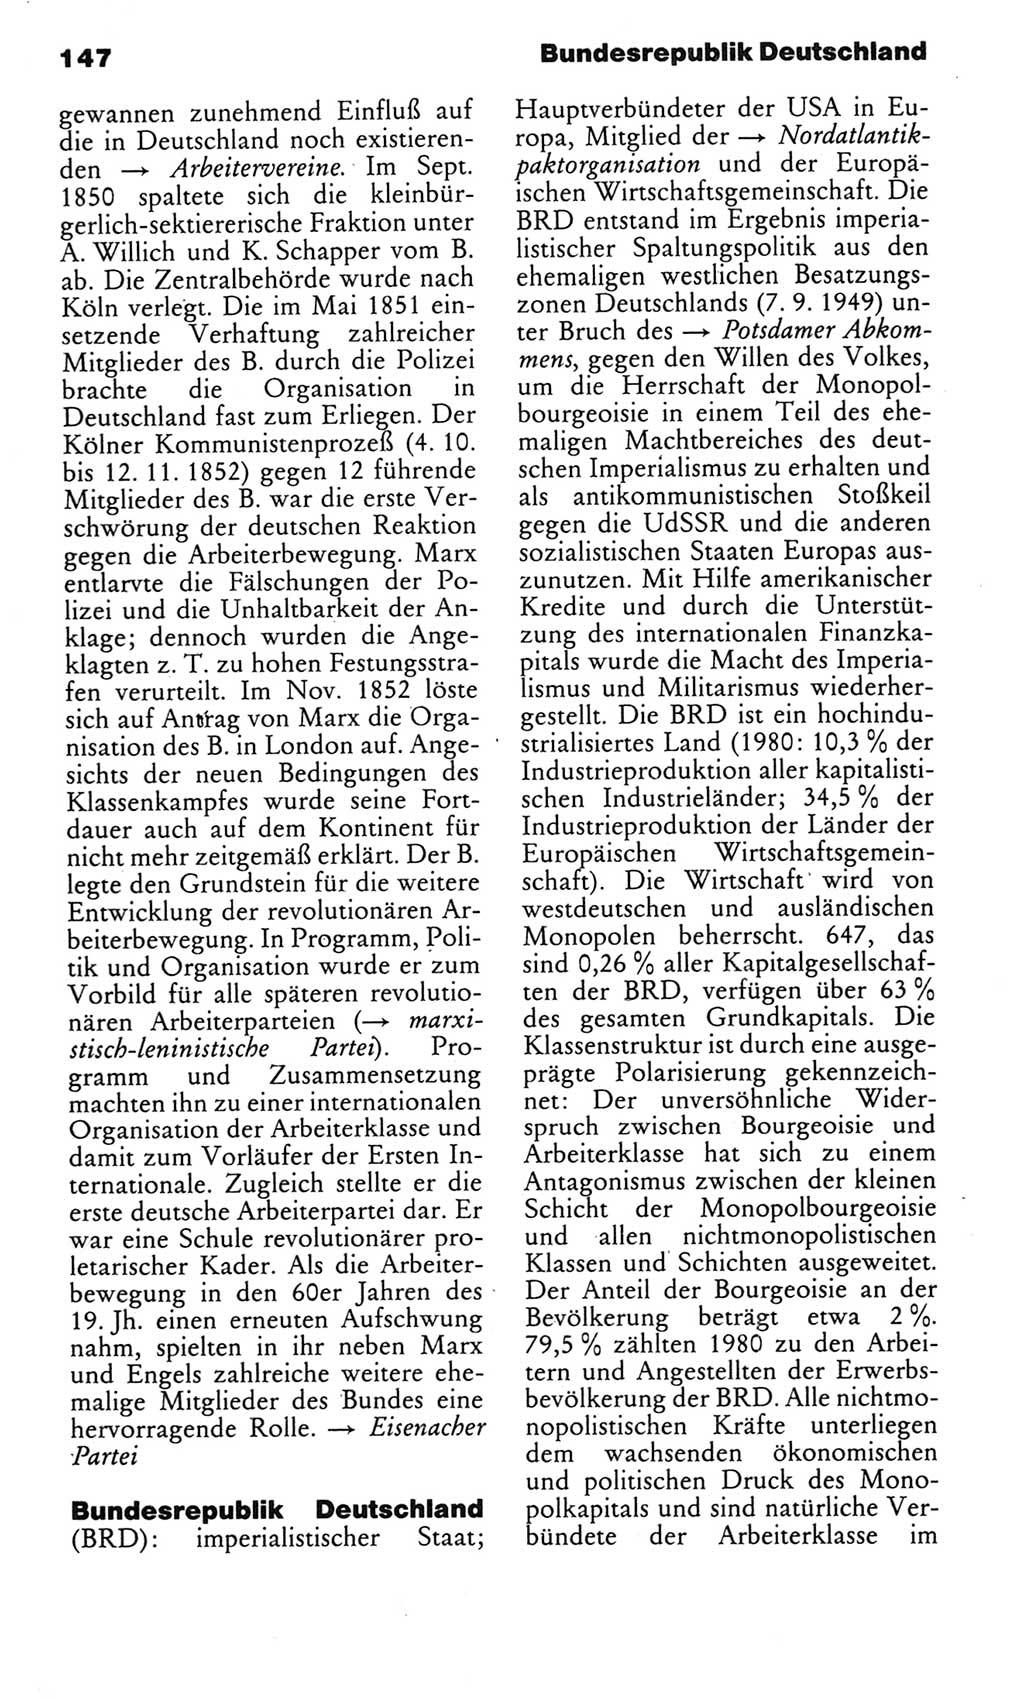 Kleines politisches Wörterbuch [Deutsche Demokratische Republik (DDR)] 1983, Seite 147 (Kl. pol. Wb. DDR 1983, S. 147)